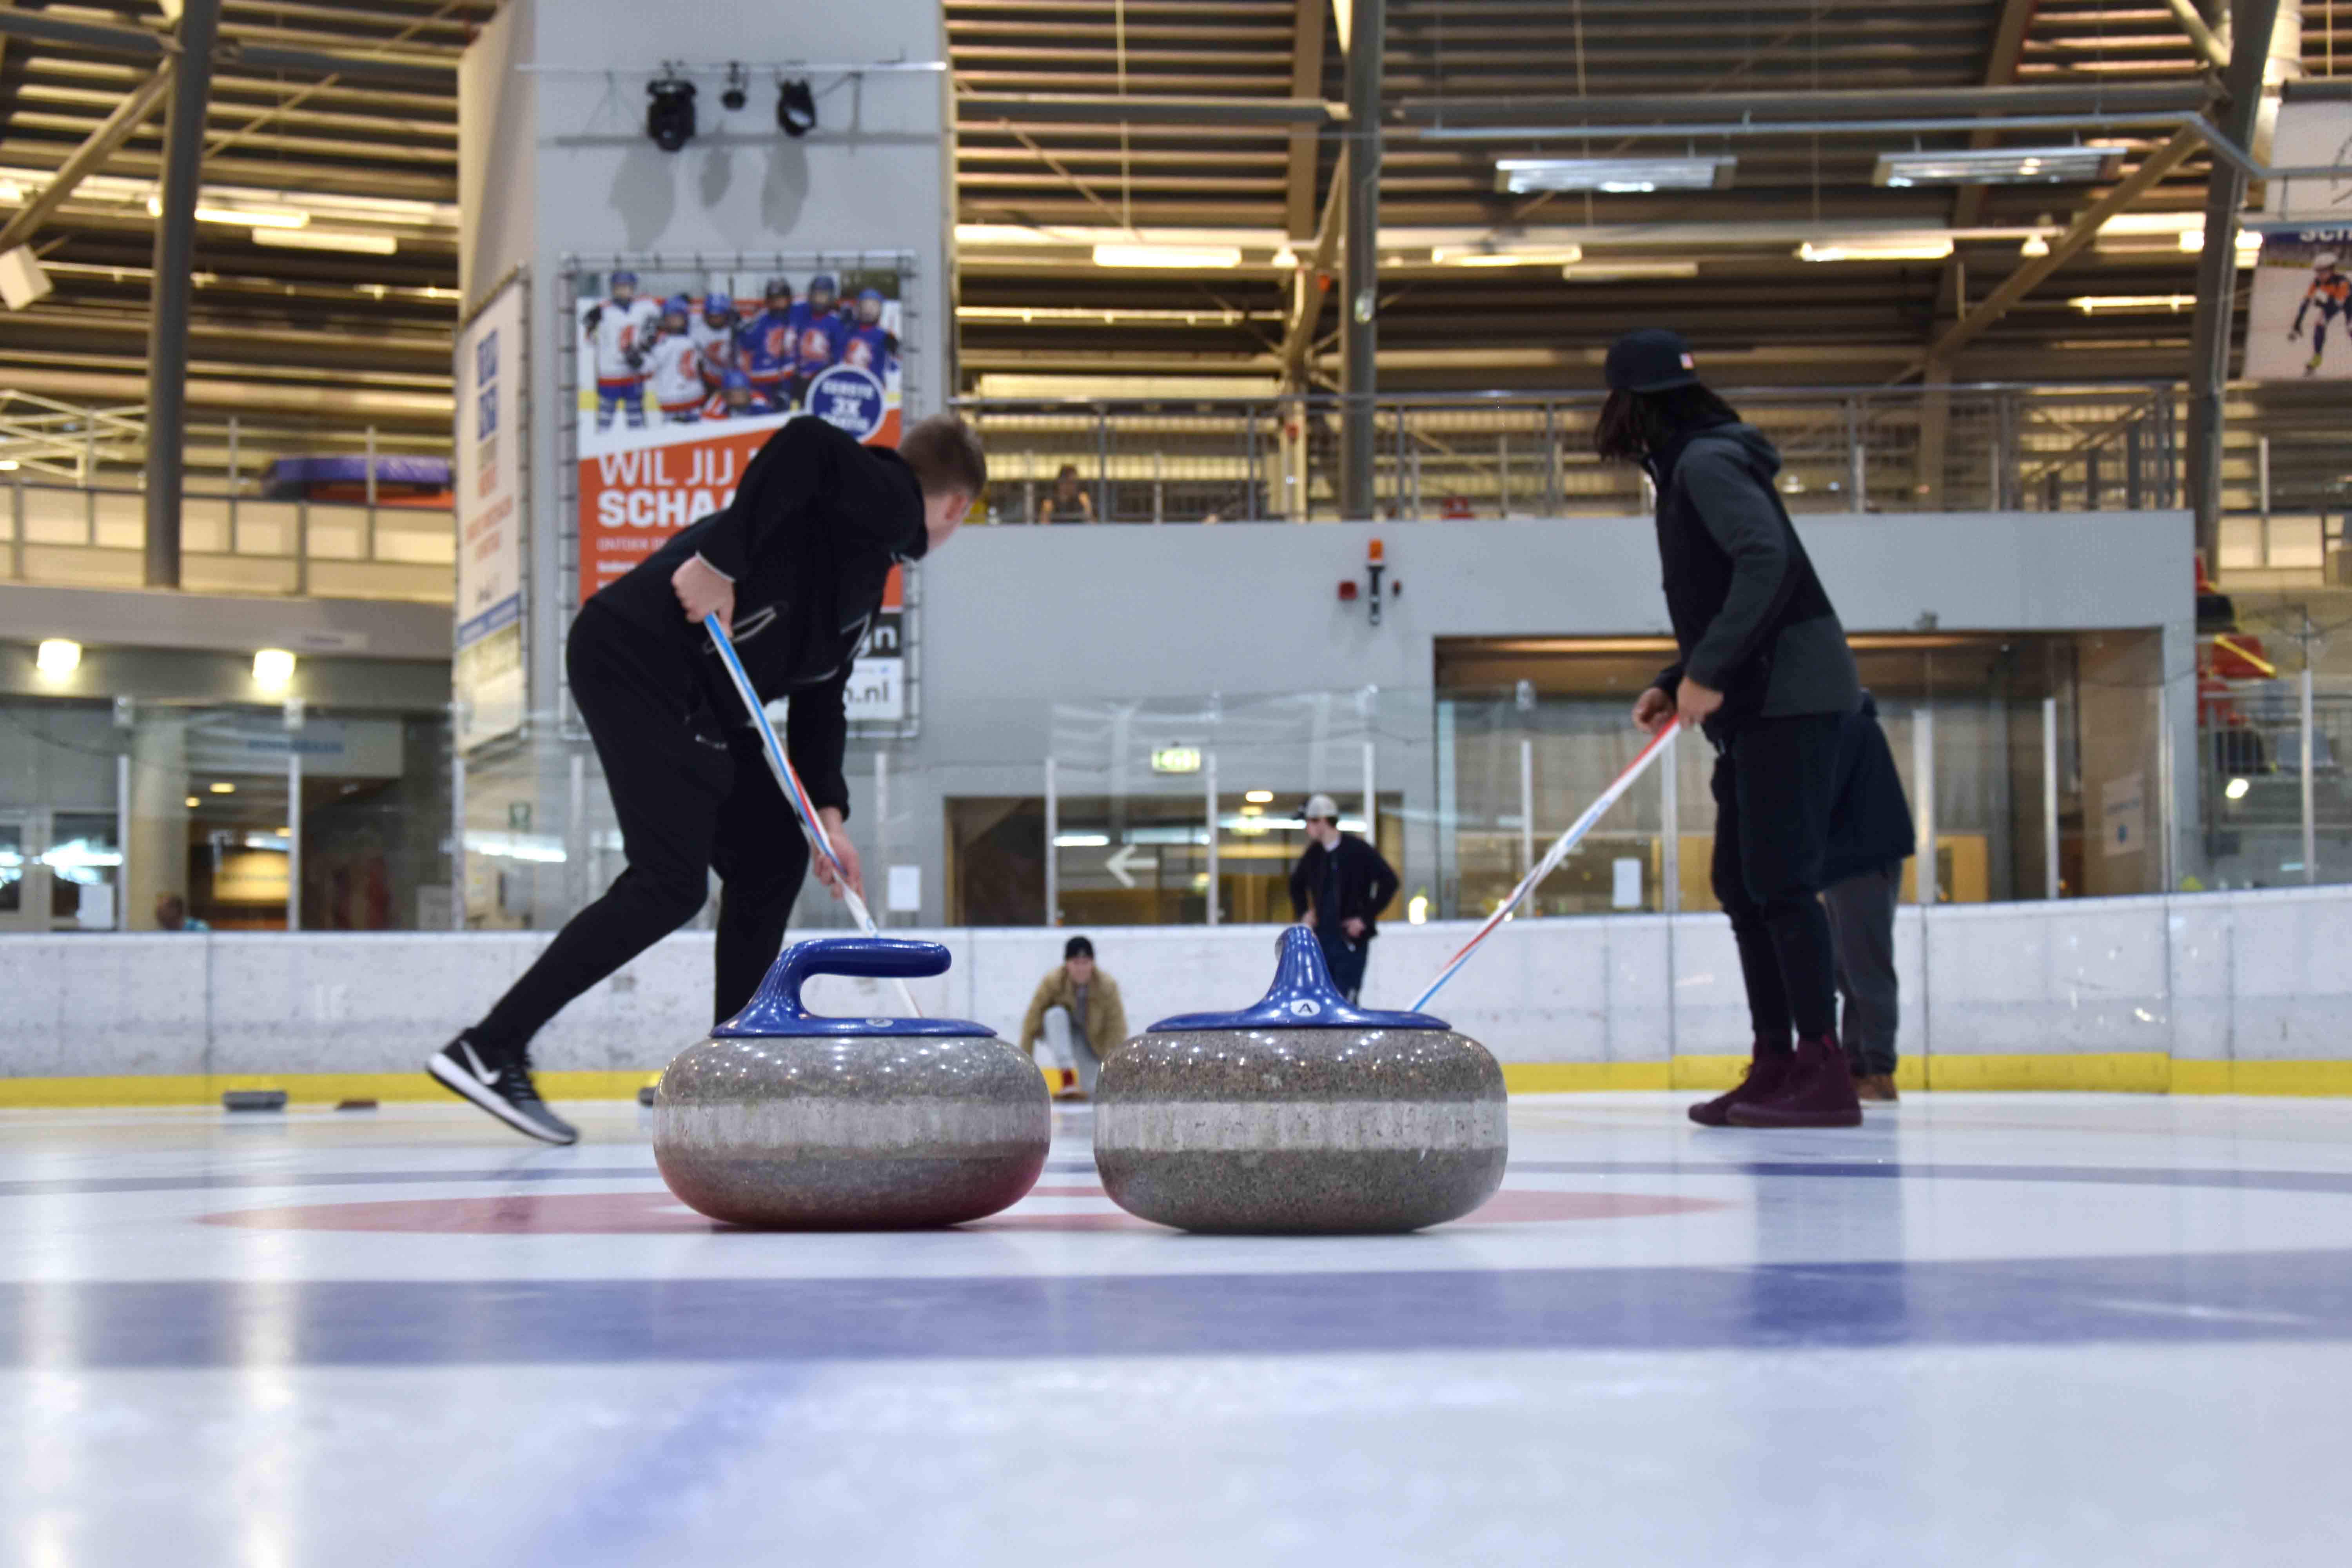 Vier mensen zijn bezig met een spel curling